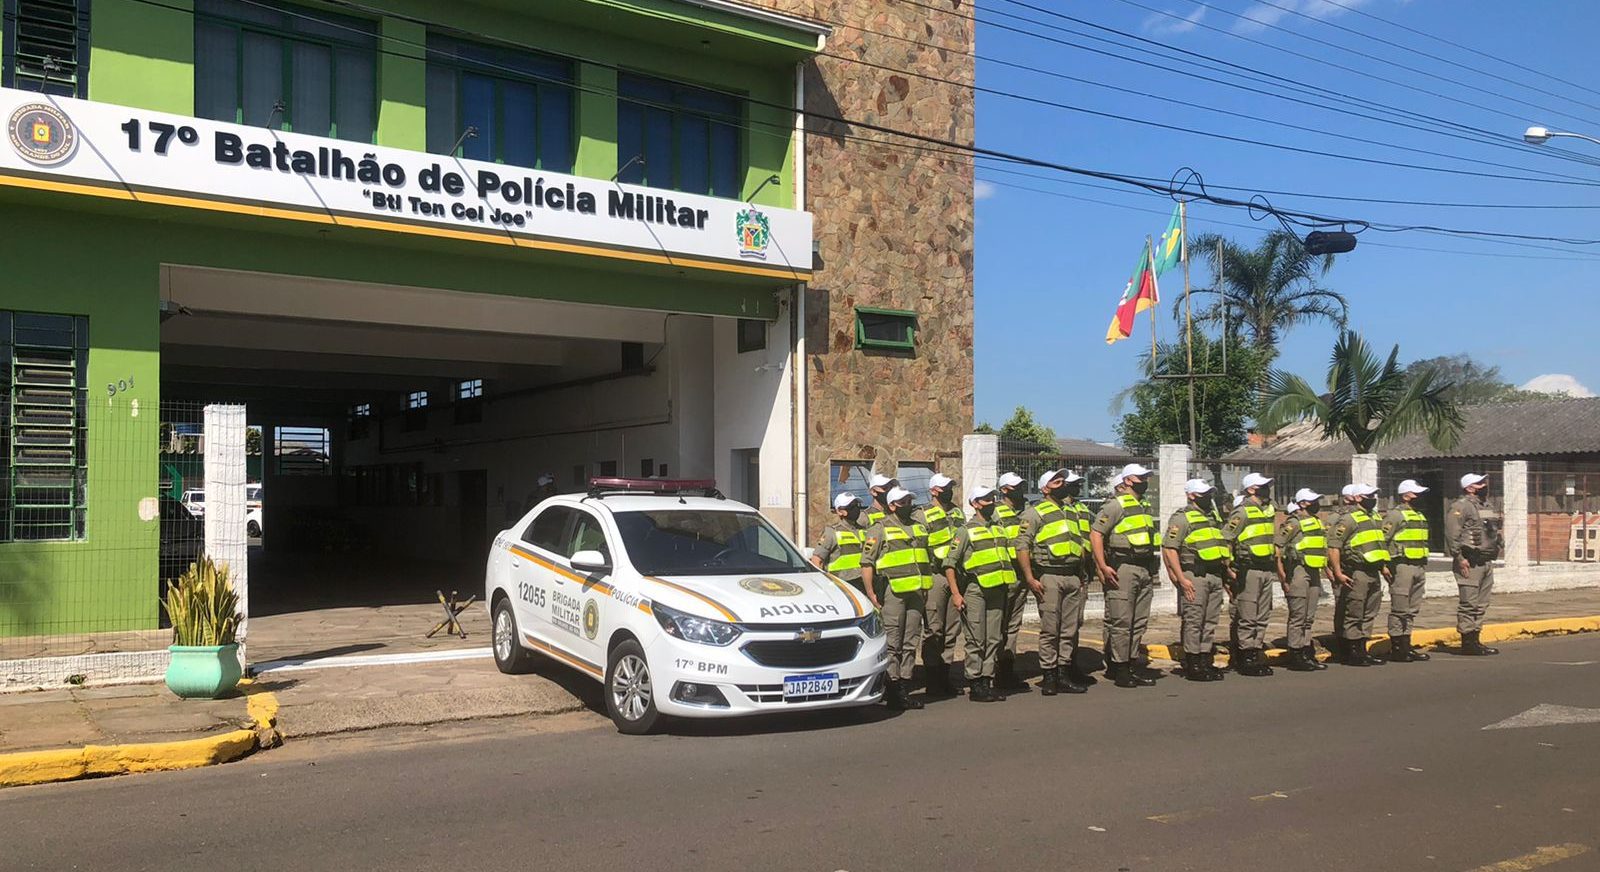 Alunos-Soldados da Brigada Militar reforçam o policiamento em Gravataí